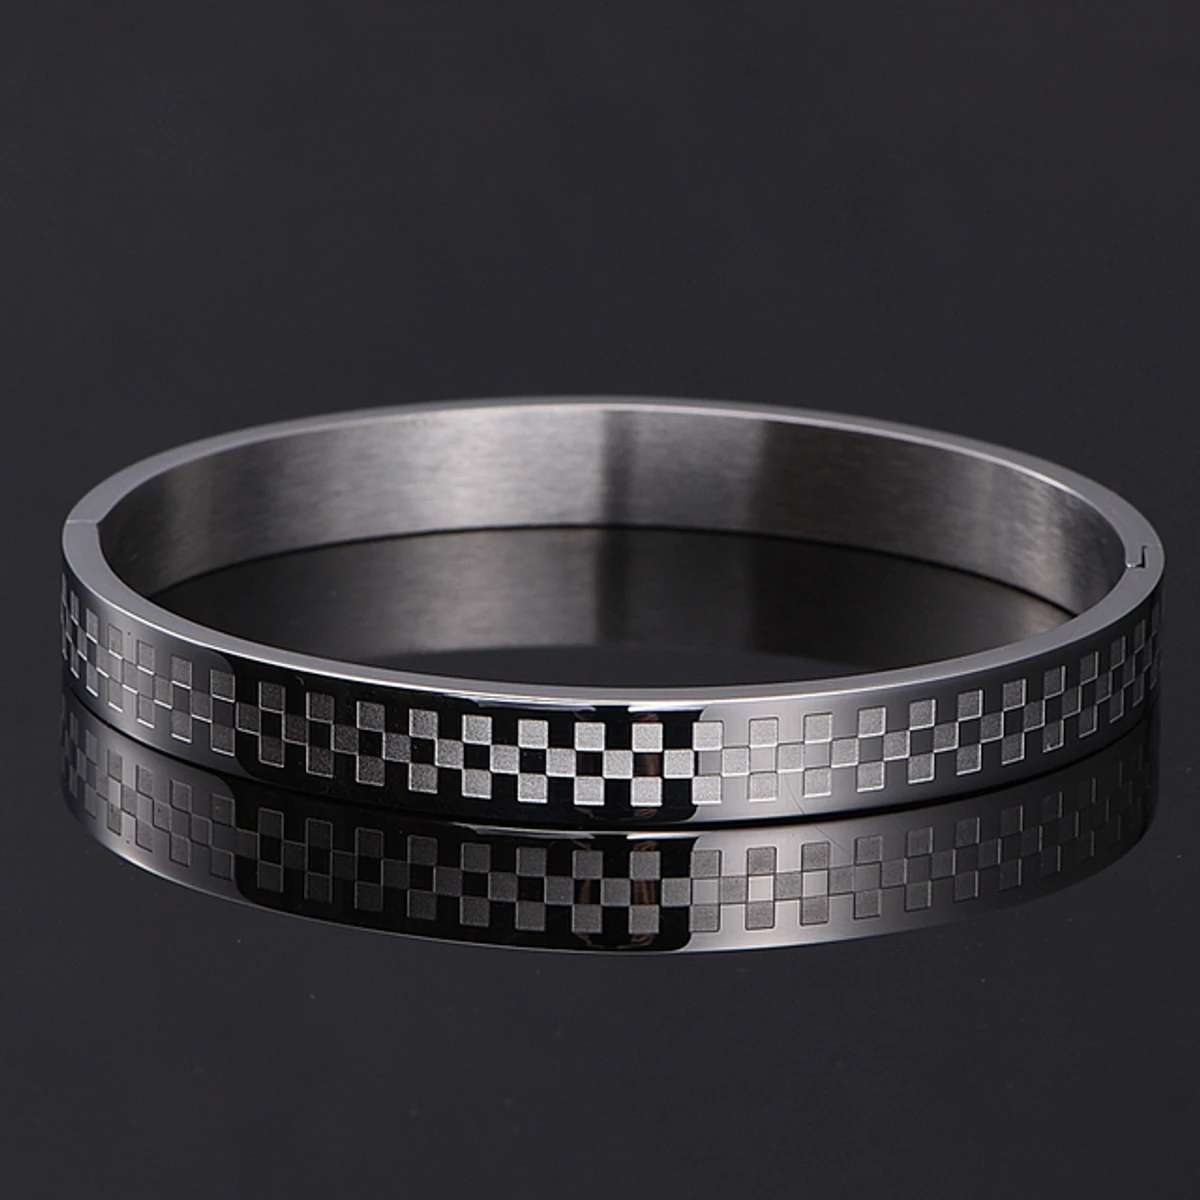 Silver Free Size Stainless Steel Trandy Kadaa Bracelet For Men